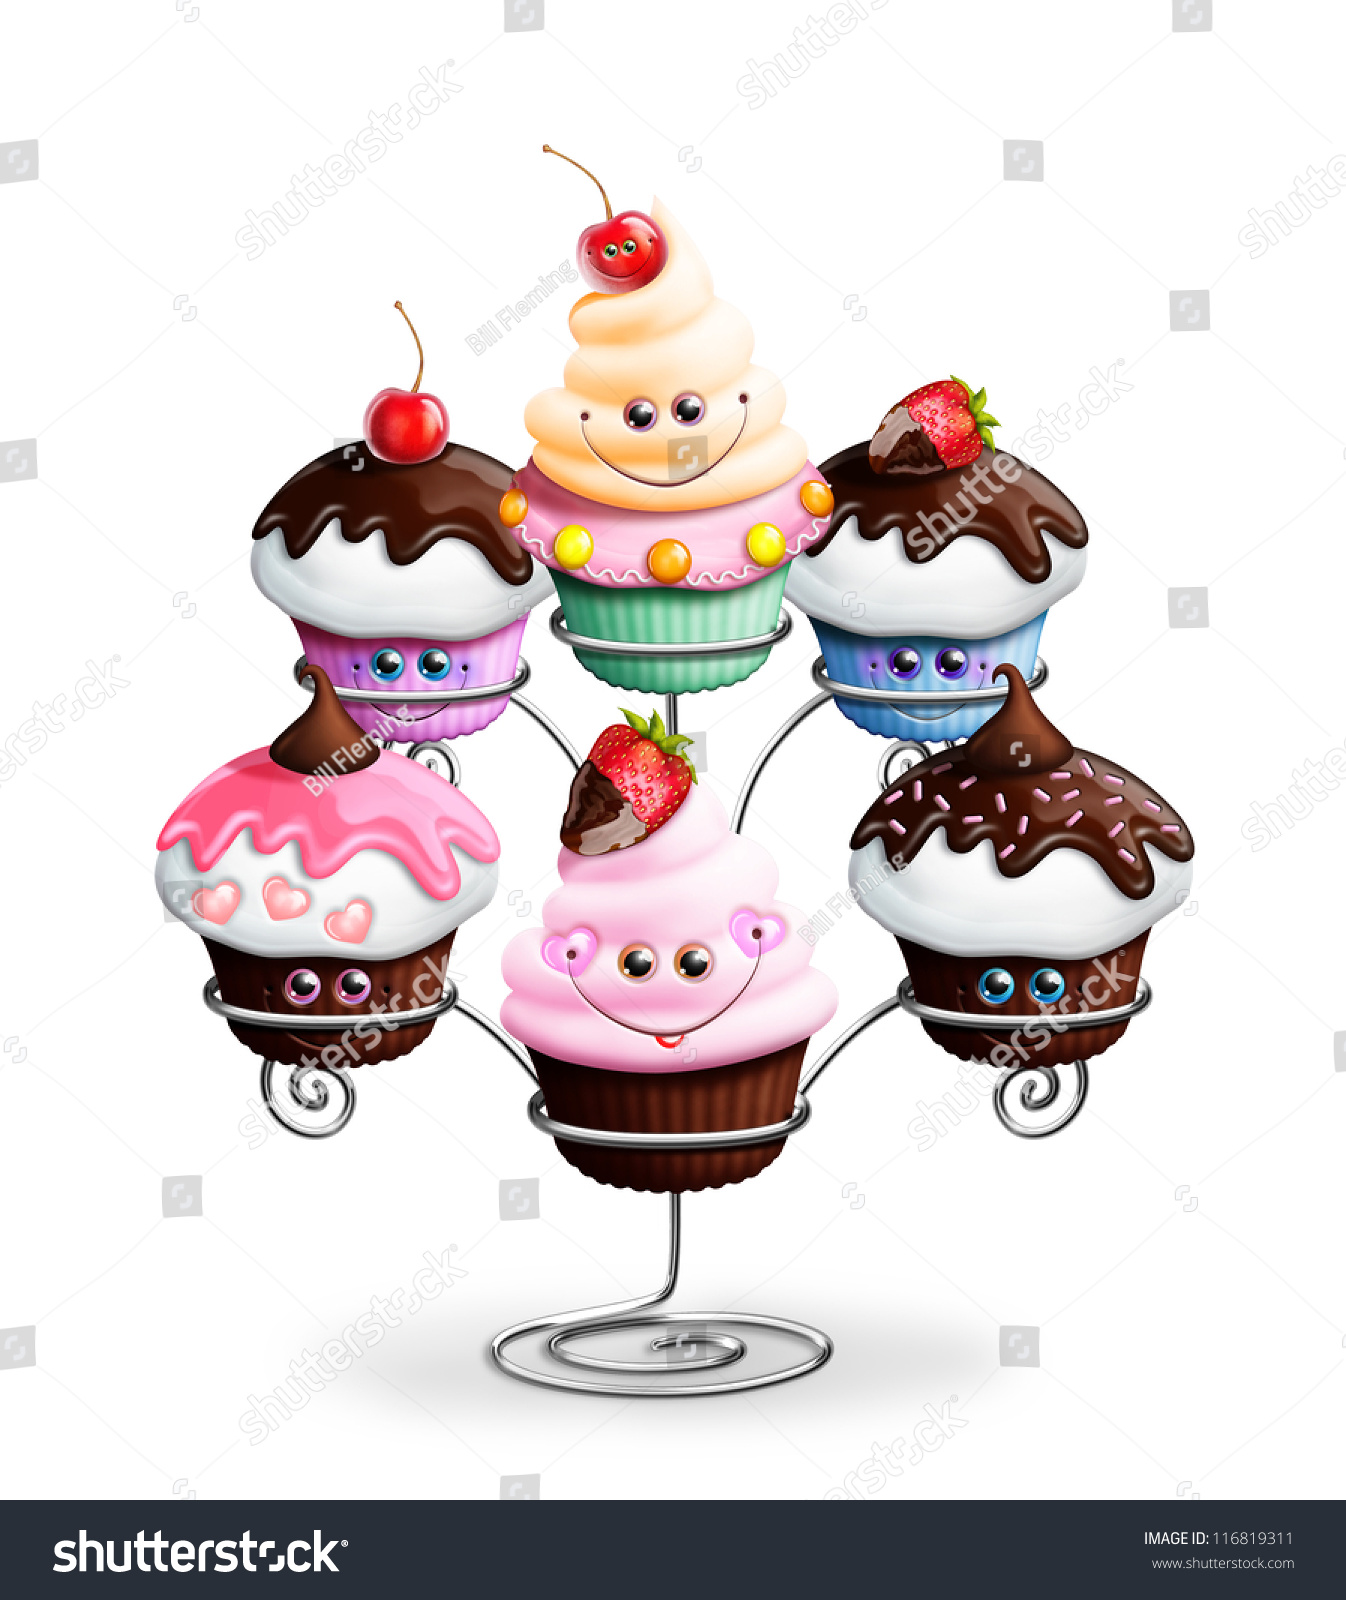 Cute Cartoon Cupcakes